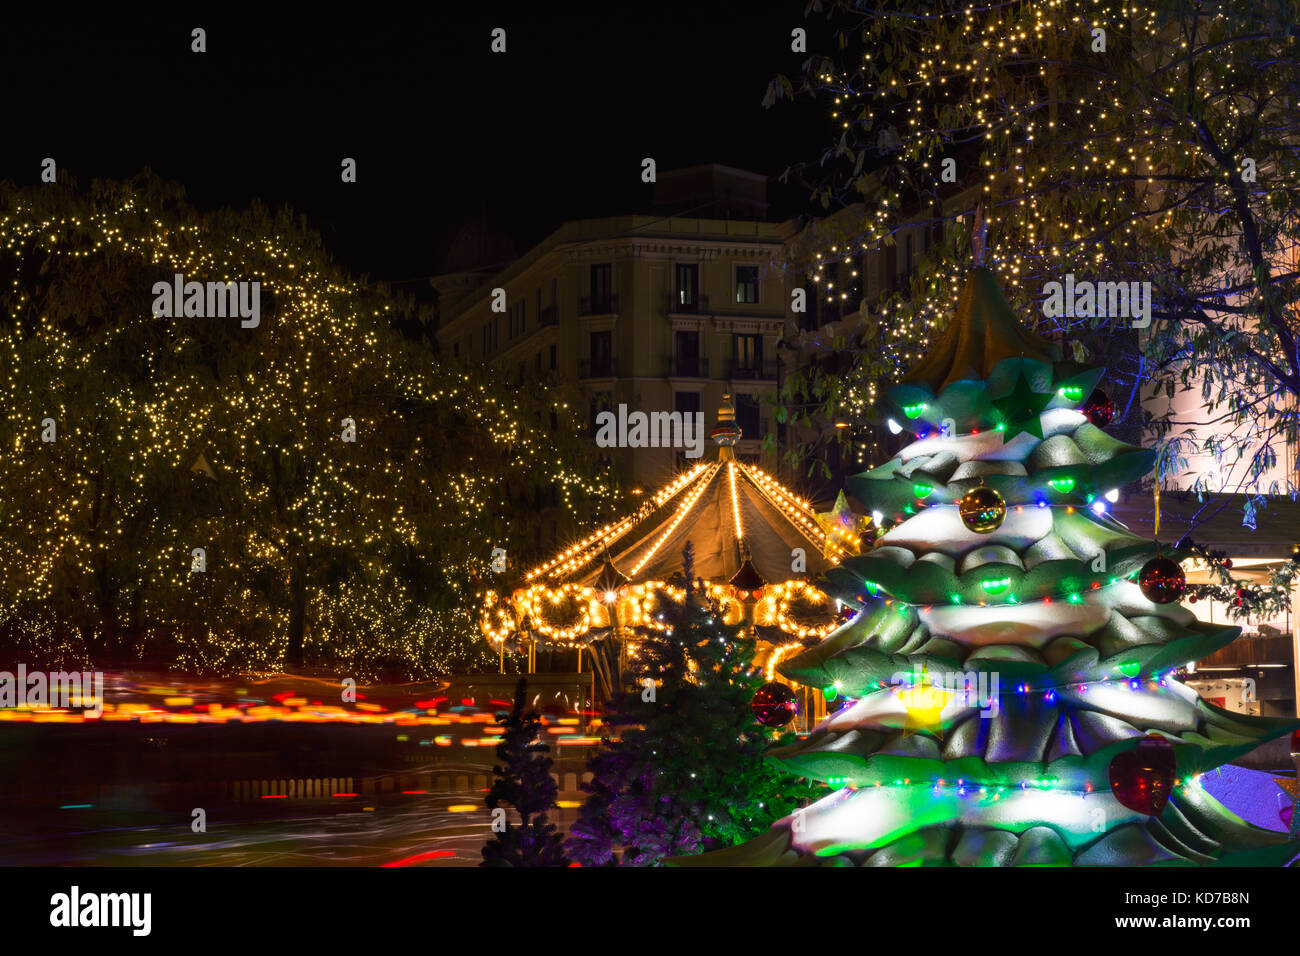 Night image of christmas carousel, lights and Christmas tree Stock ...